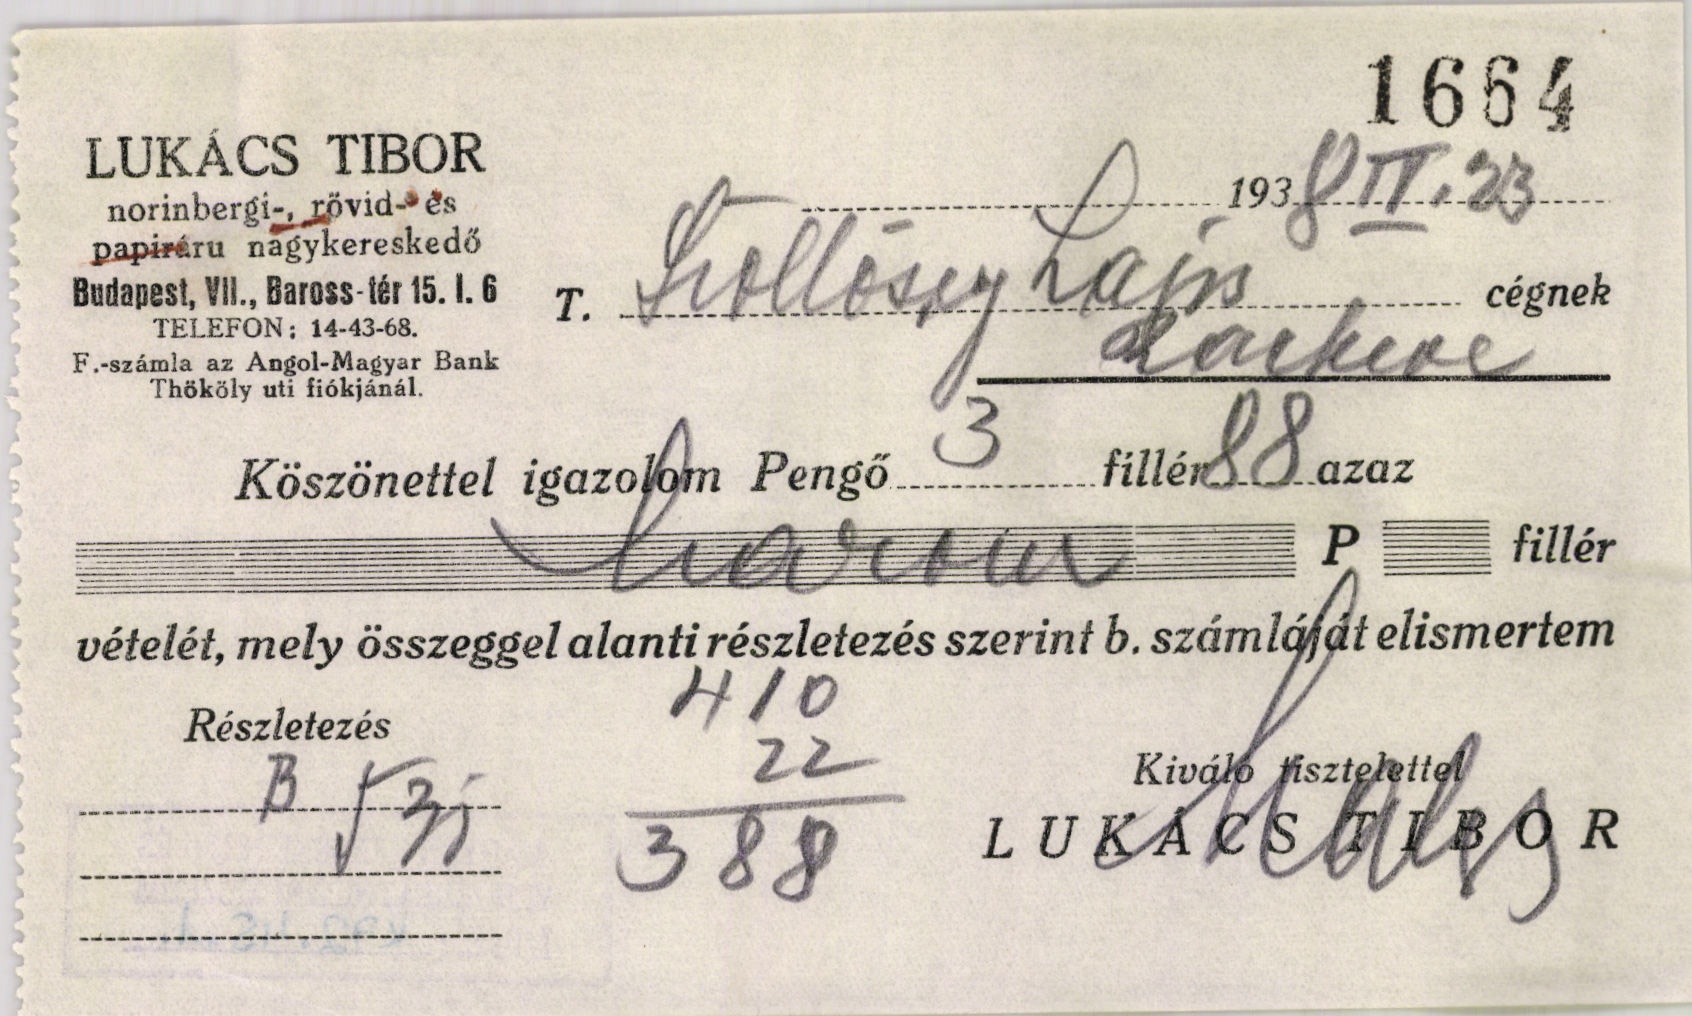 Lukács Tibor norinbergi-, rövid- és papíráru nagykereskedő (Magyar Kereskedelmi és Vendéglátóipari Múzeum CC BY-NC-SA)